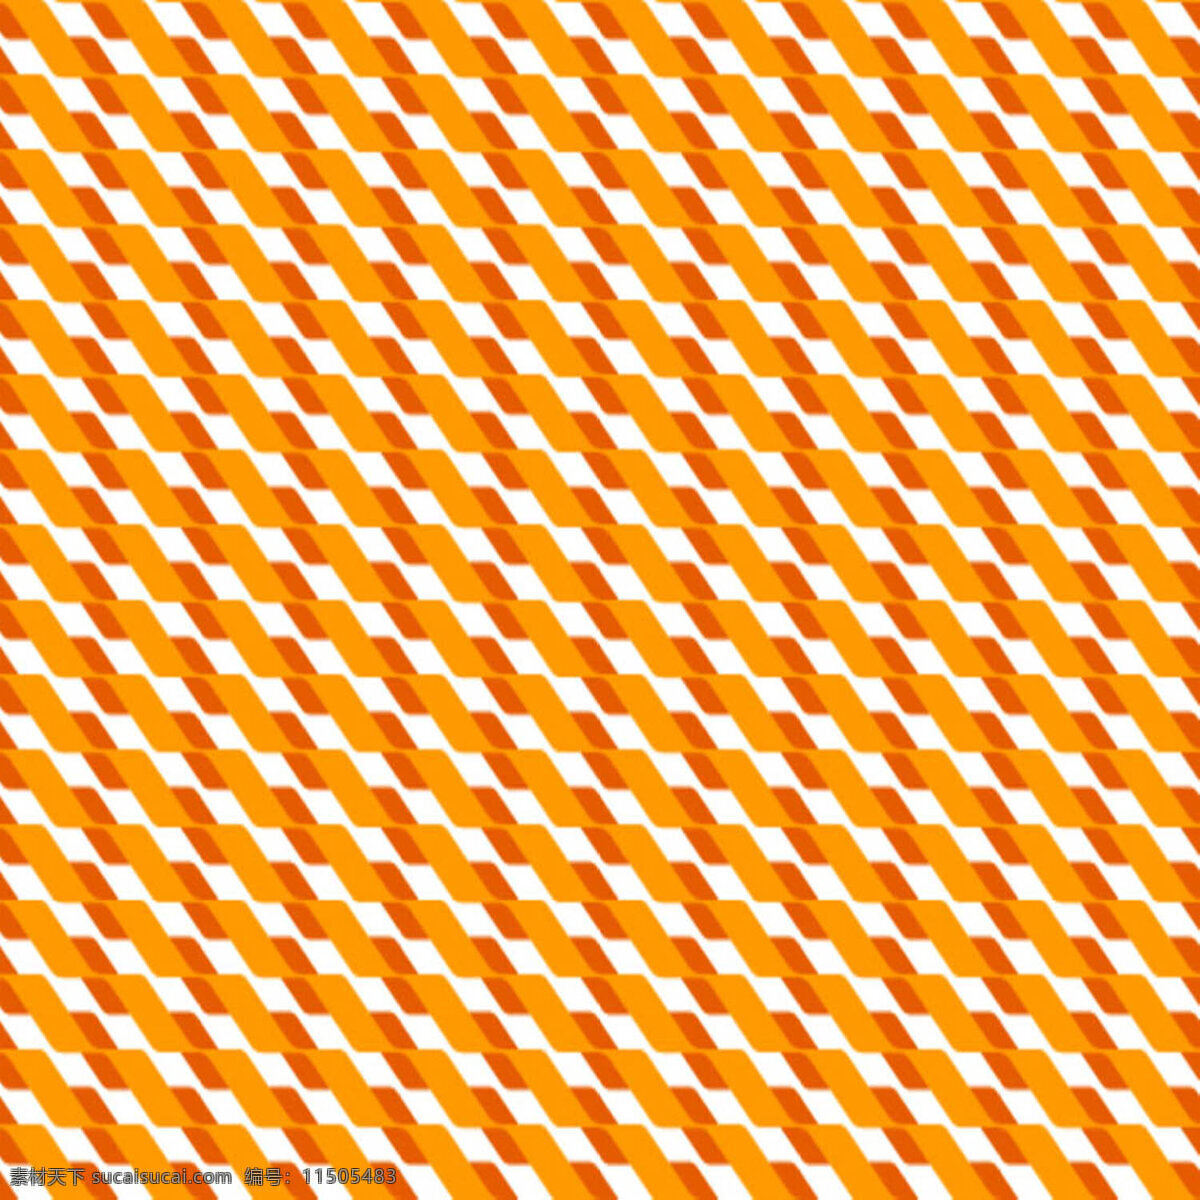 米黄 布纹 白色 斑马纹 格子 红色 素雅 条纹 斜条纹 斜纹 苏格兰格 背景图片